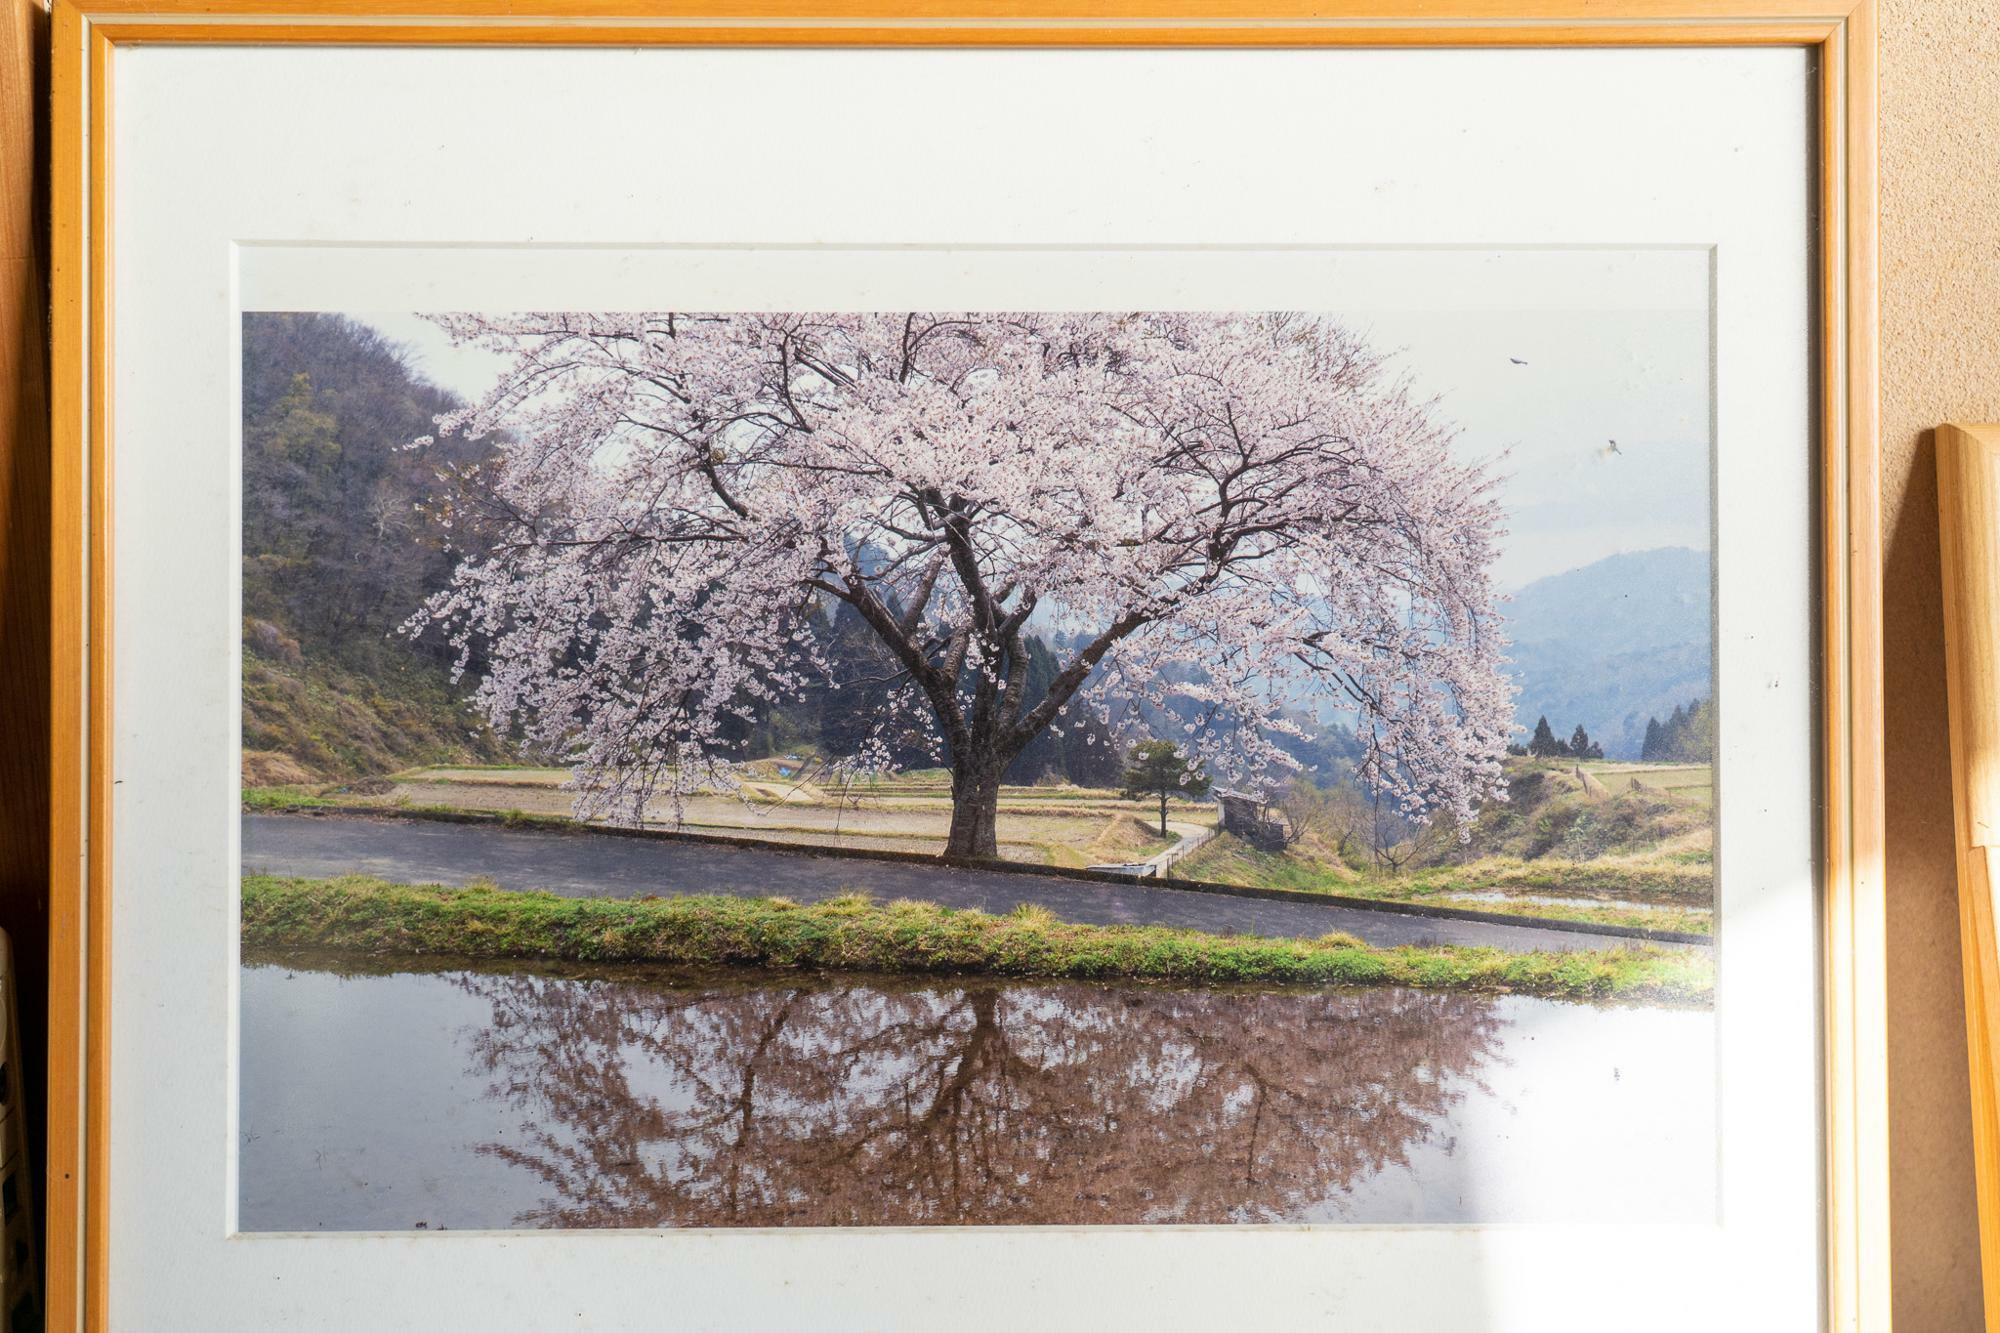 溝口さんの自宅玄関に飾られていた桜の写真。山田さんたちが稲作をする田んぼはこの桜の真横になる